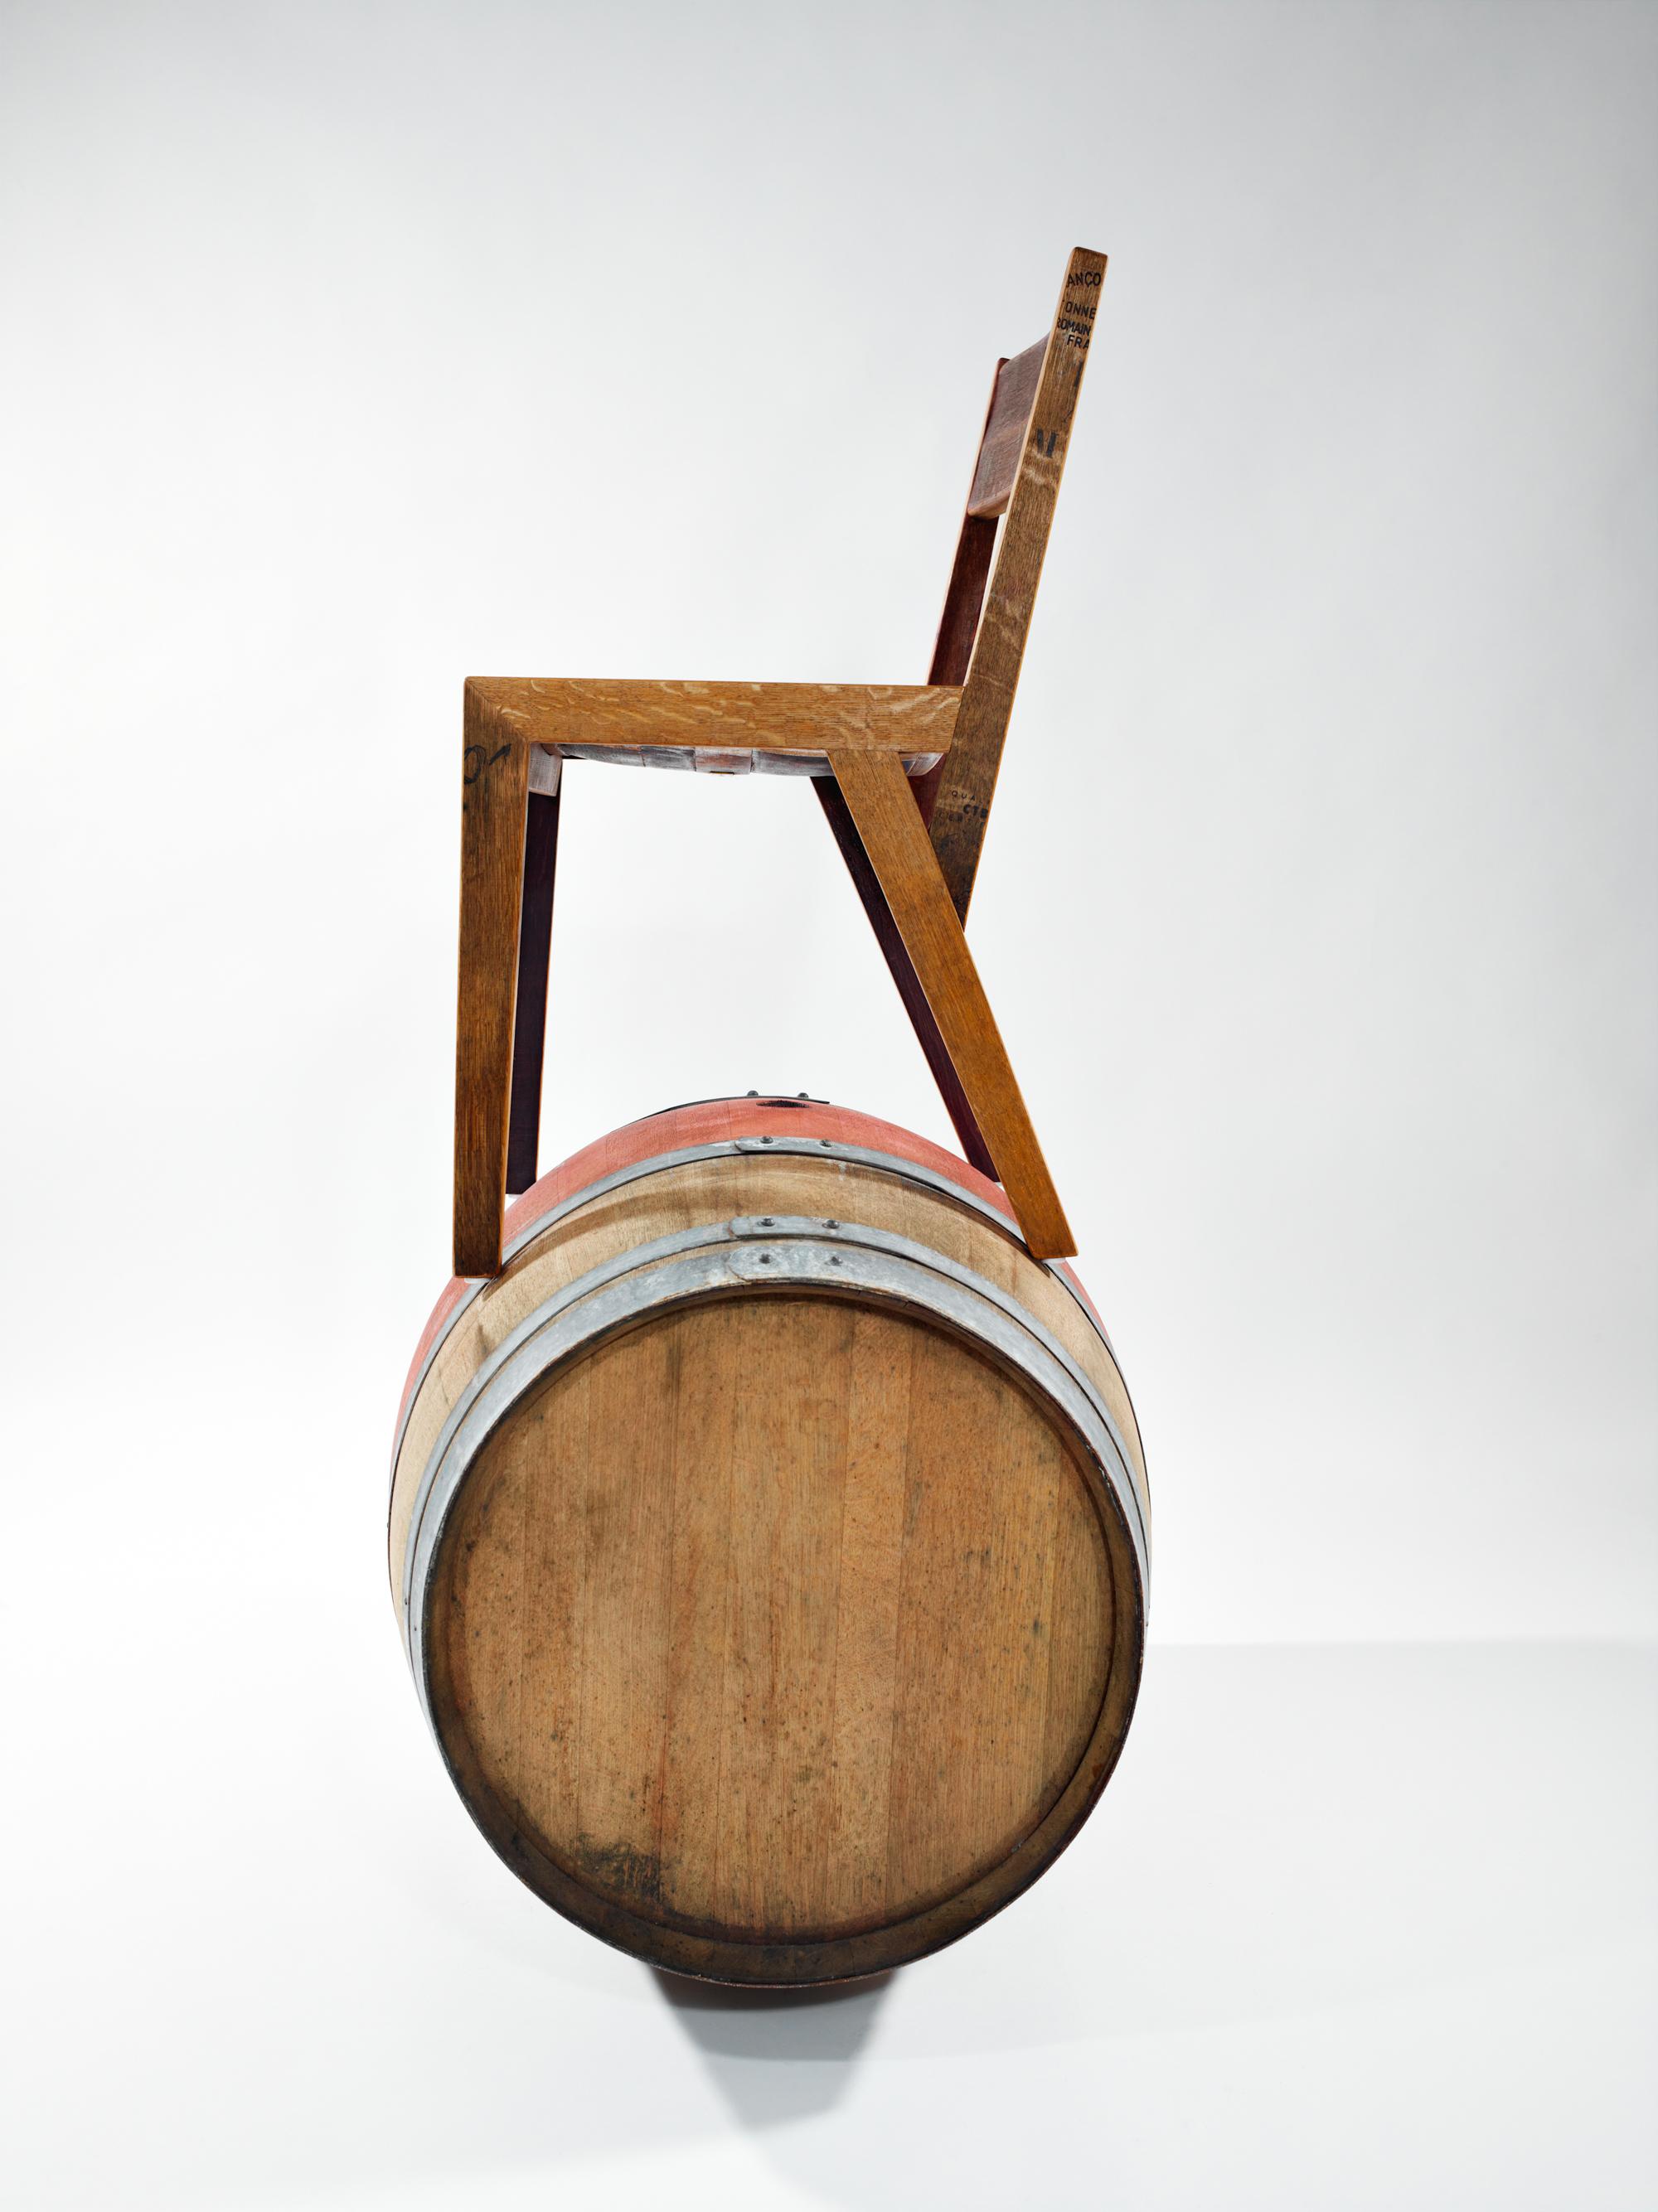 Barrique Stuhl Limited mit 225Liter Barrique #stuhl #holzstuhl #designstuhl #upcycling ©Magnus Mewes